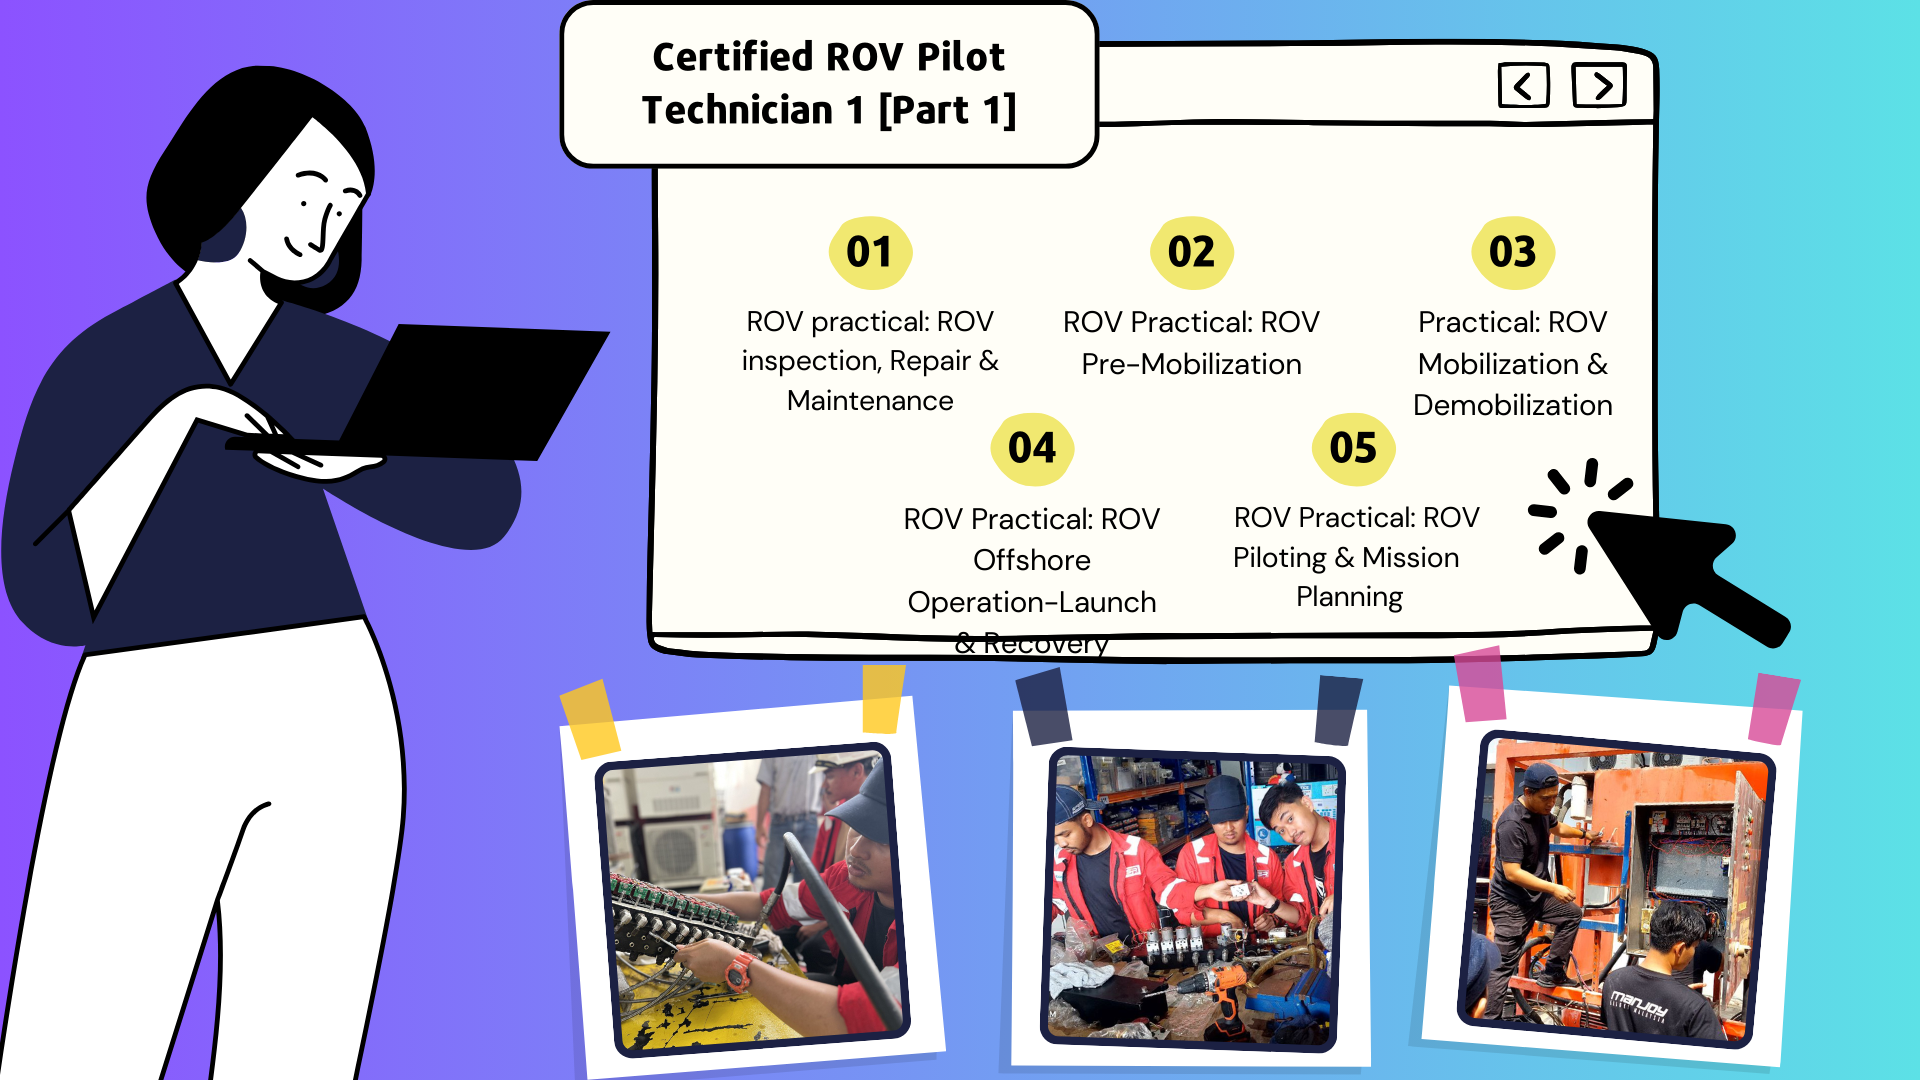 Certified ROV Pilot Technician 1 [Part 1]